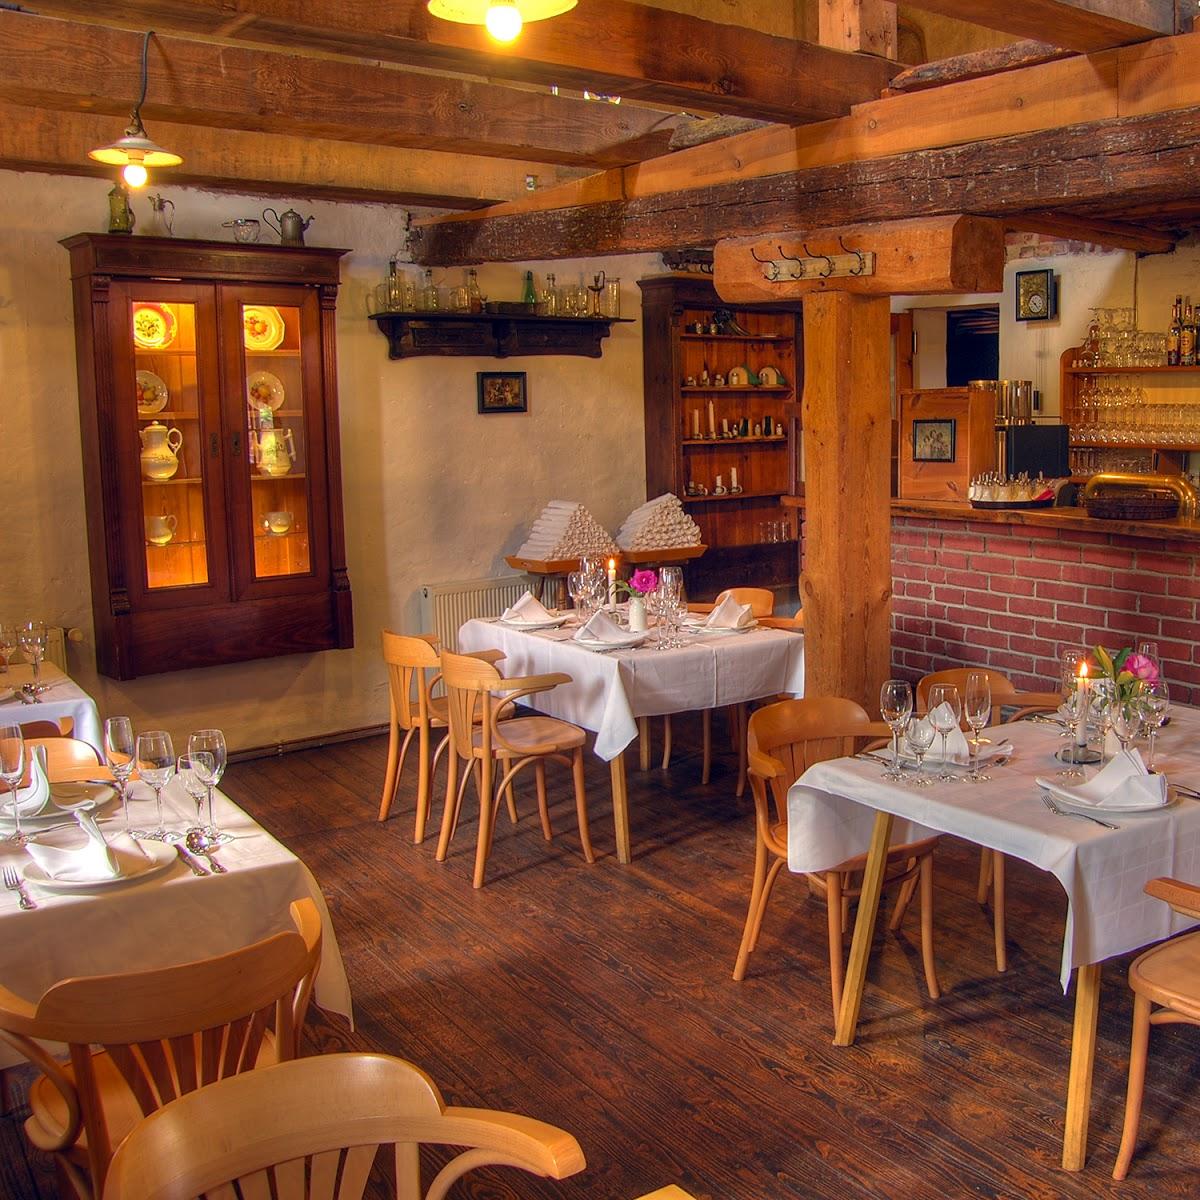 Restaurant "Zur alten Brauerei" in  Beelitz